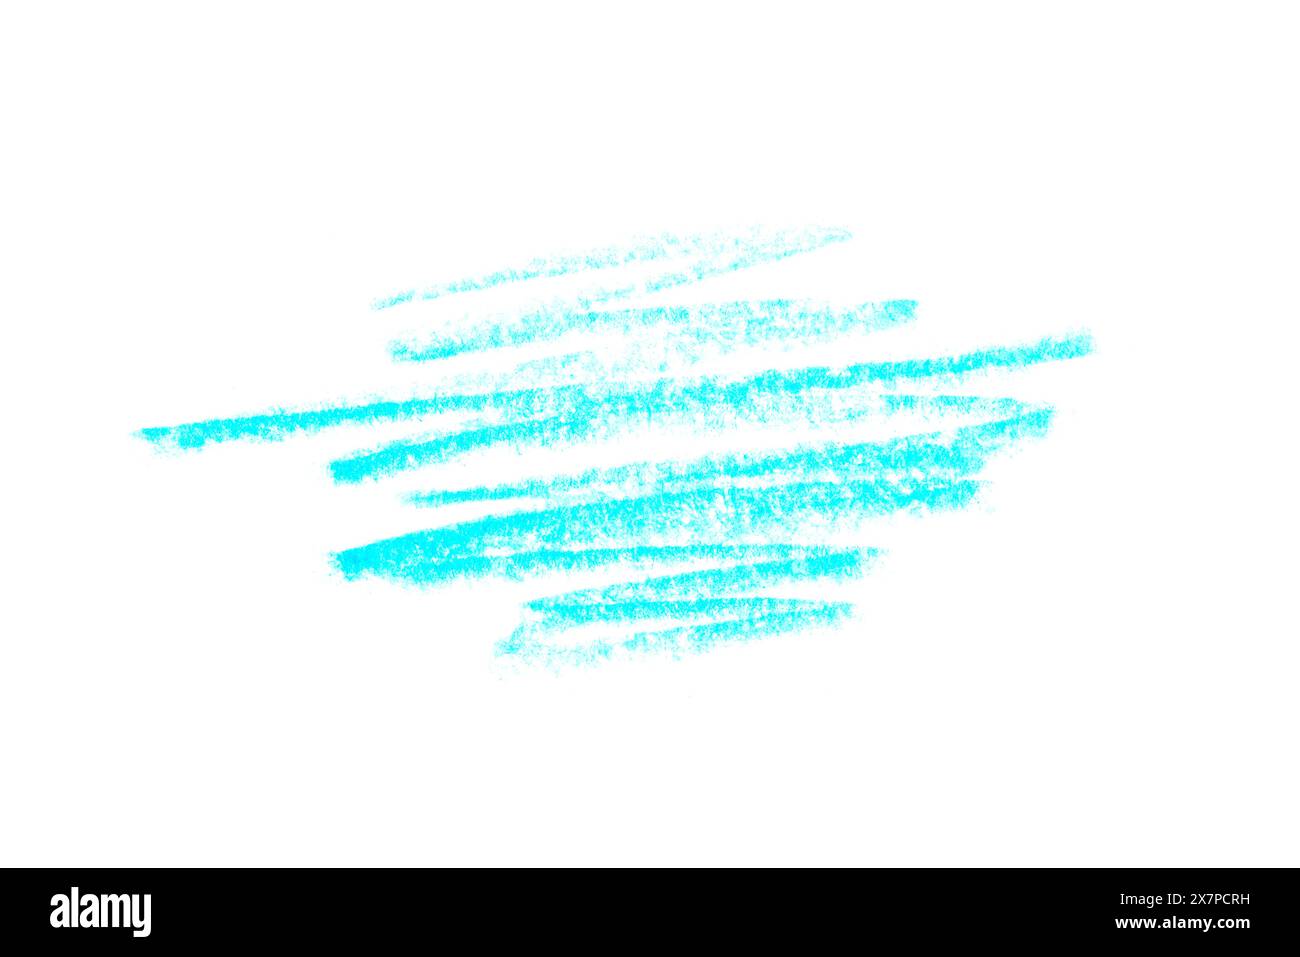 Une photo d'un trait de crayon bleu artistique sur toile blanche. Banque D'Images